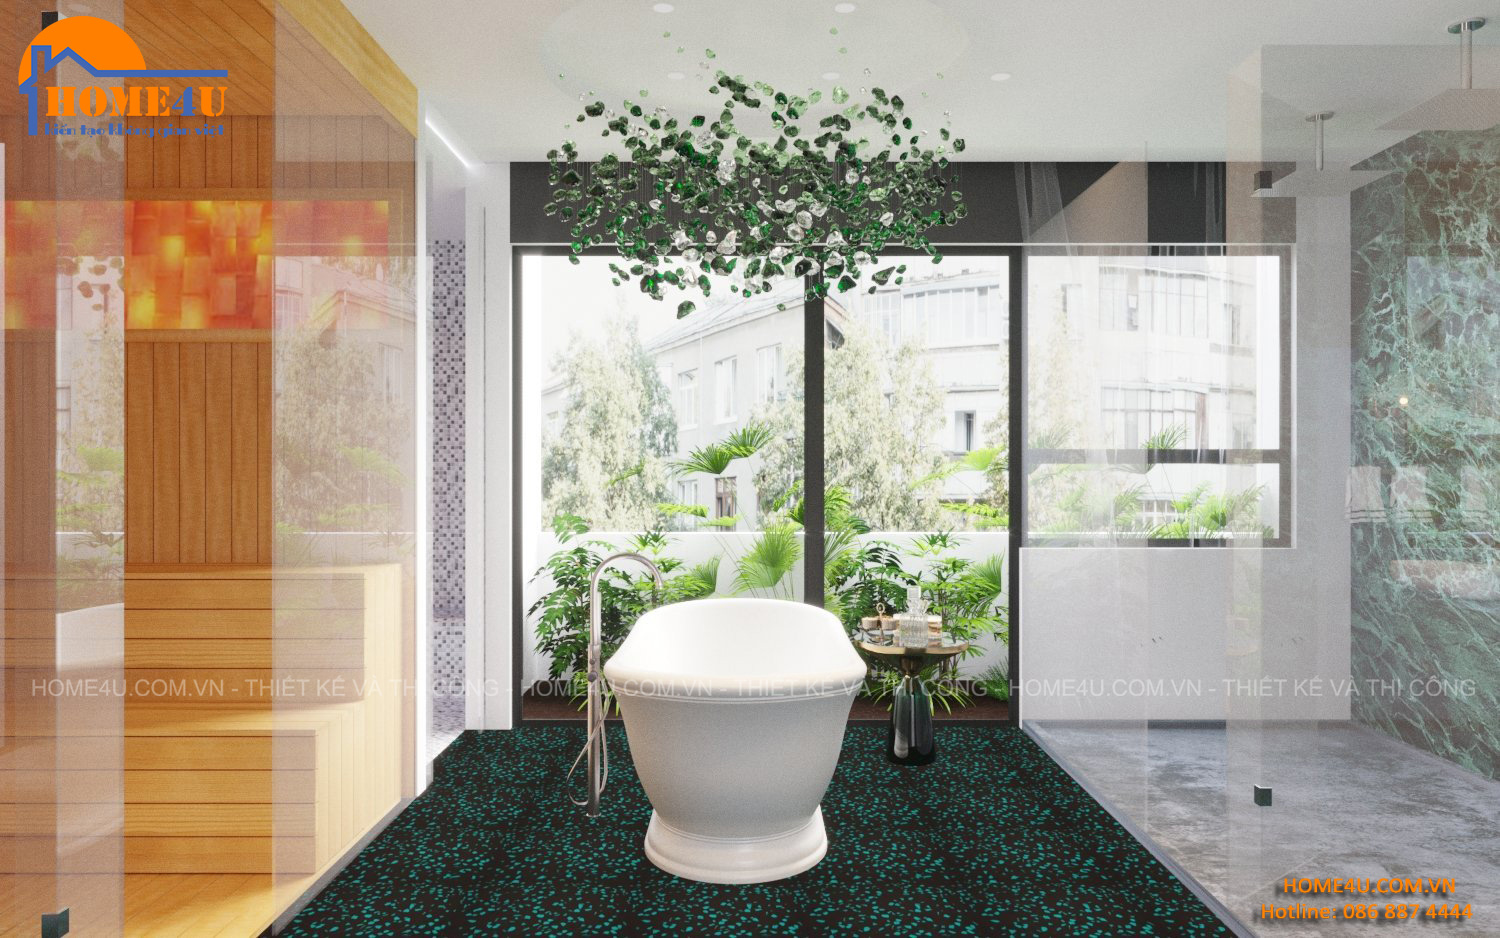 Thiết kế nội thất nhà phố 7 tầng hiện đại anh Tuấn - NTNP2013 15